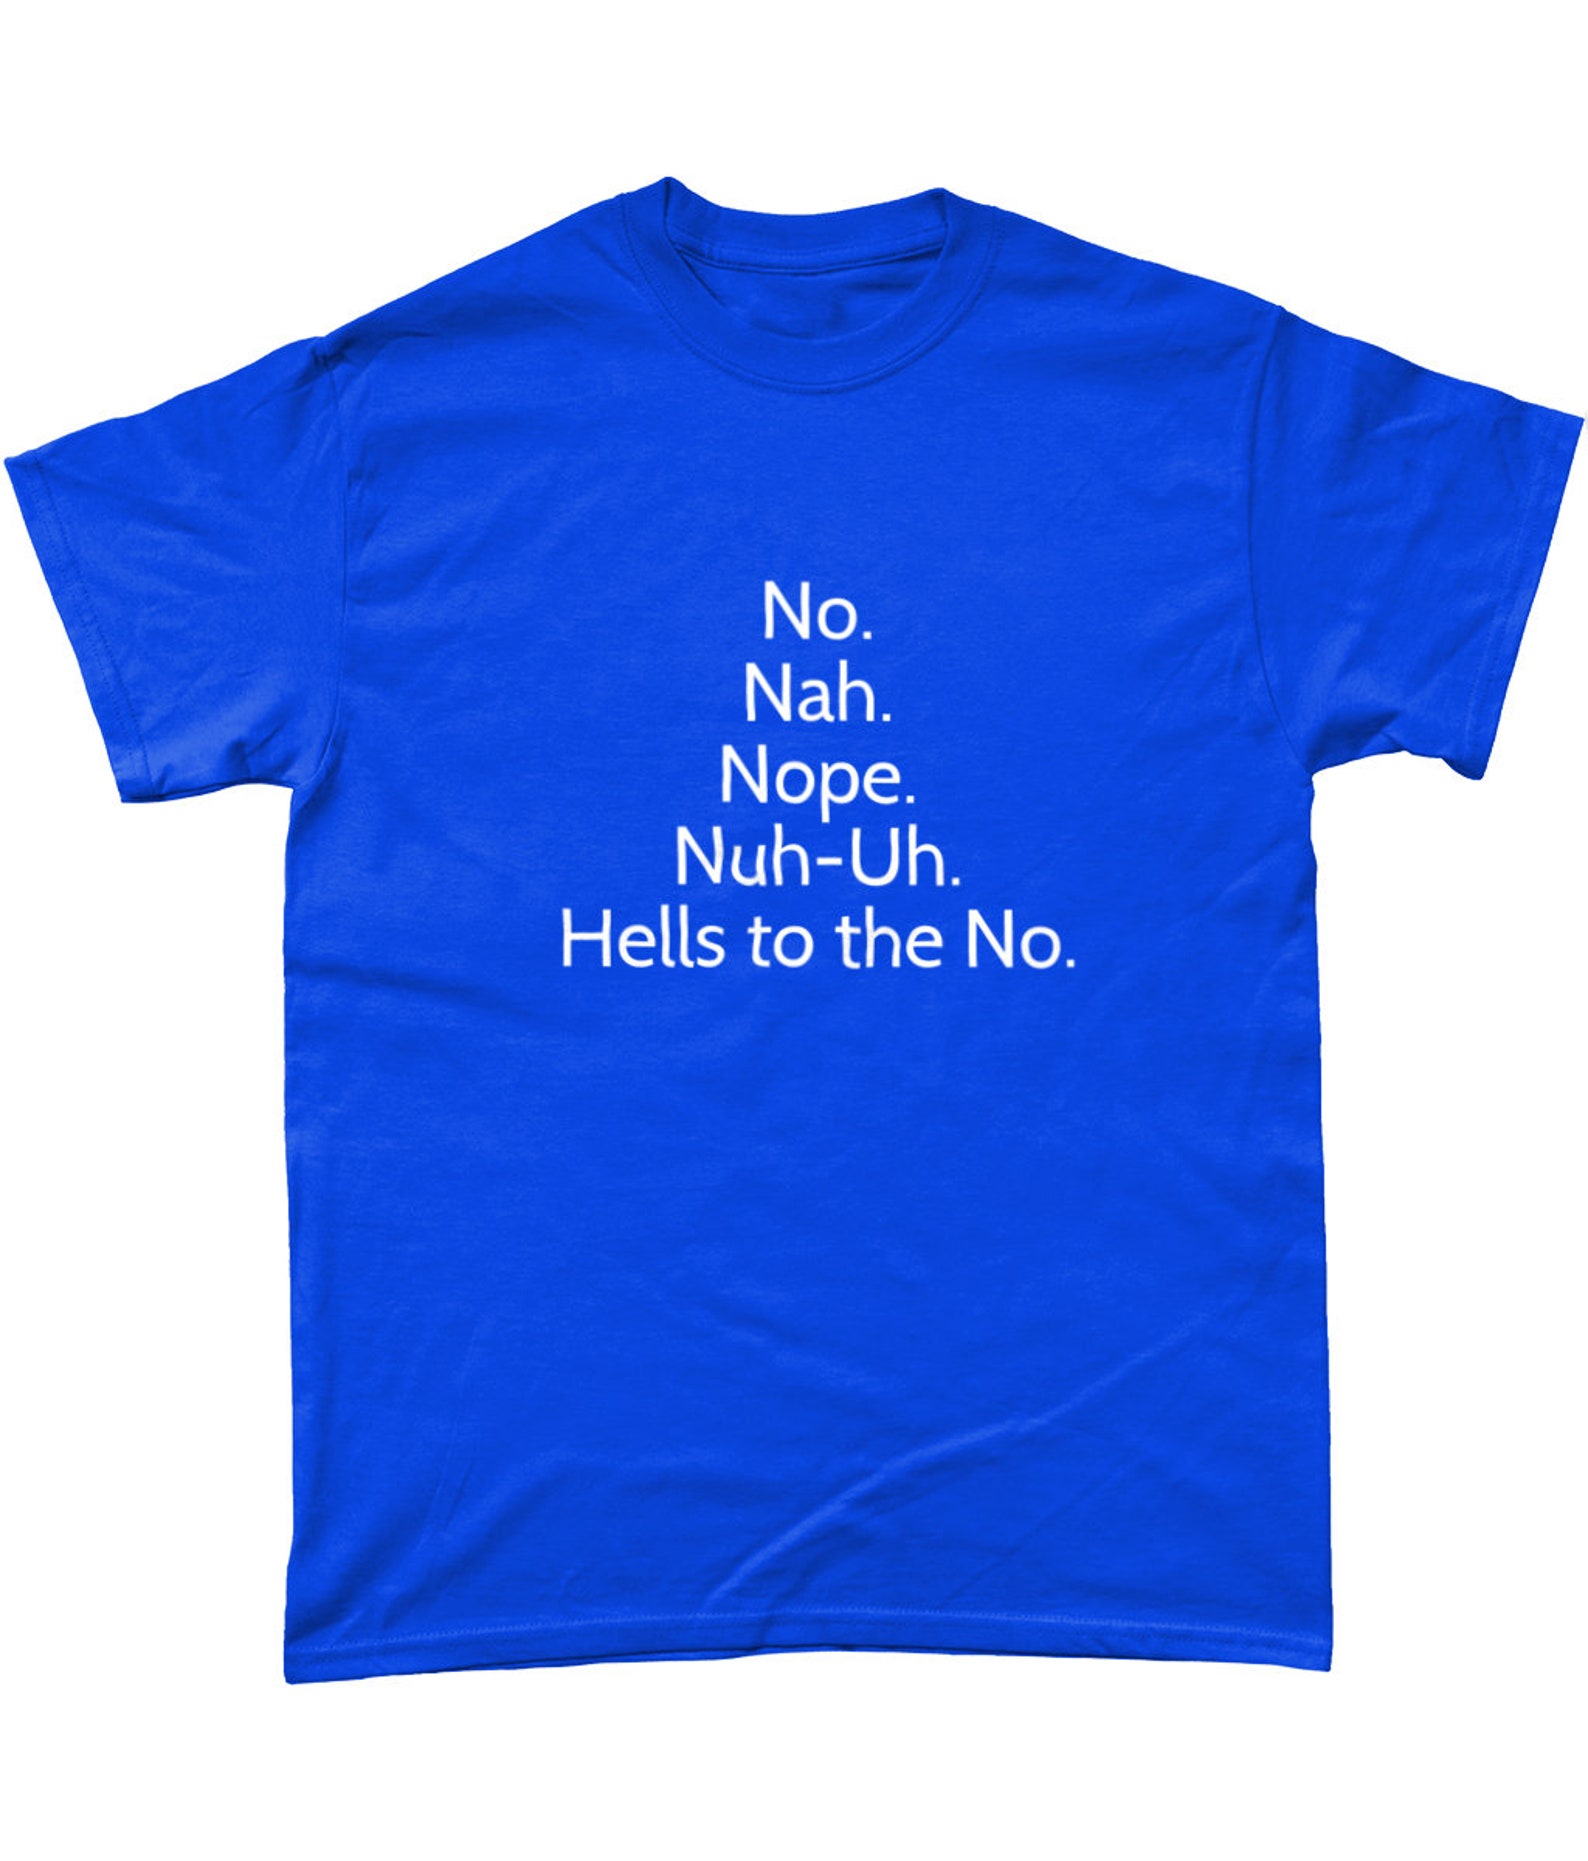 No. Nah. Nope. Nuh-Uh. Hells to the No. T-shirt | Etsy